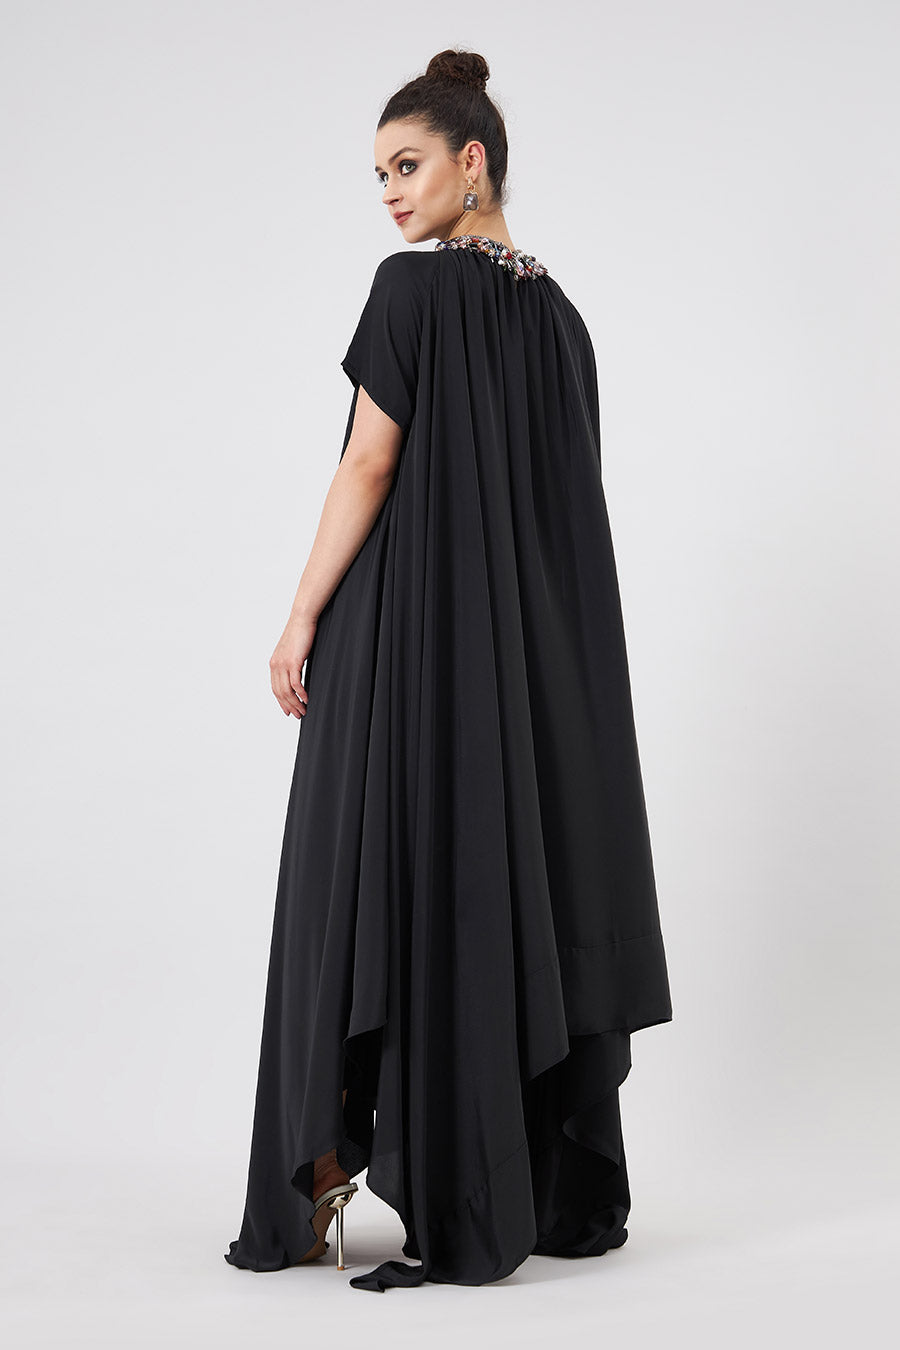 Black Embellsihed Celestial Lounge Dress